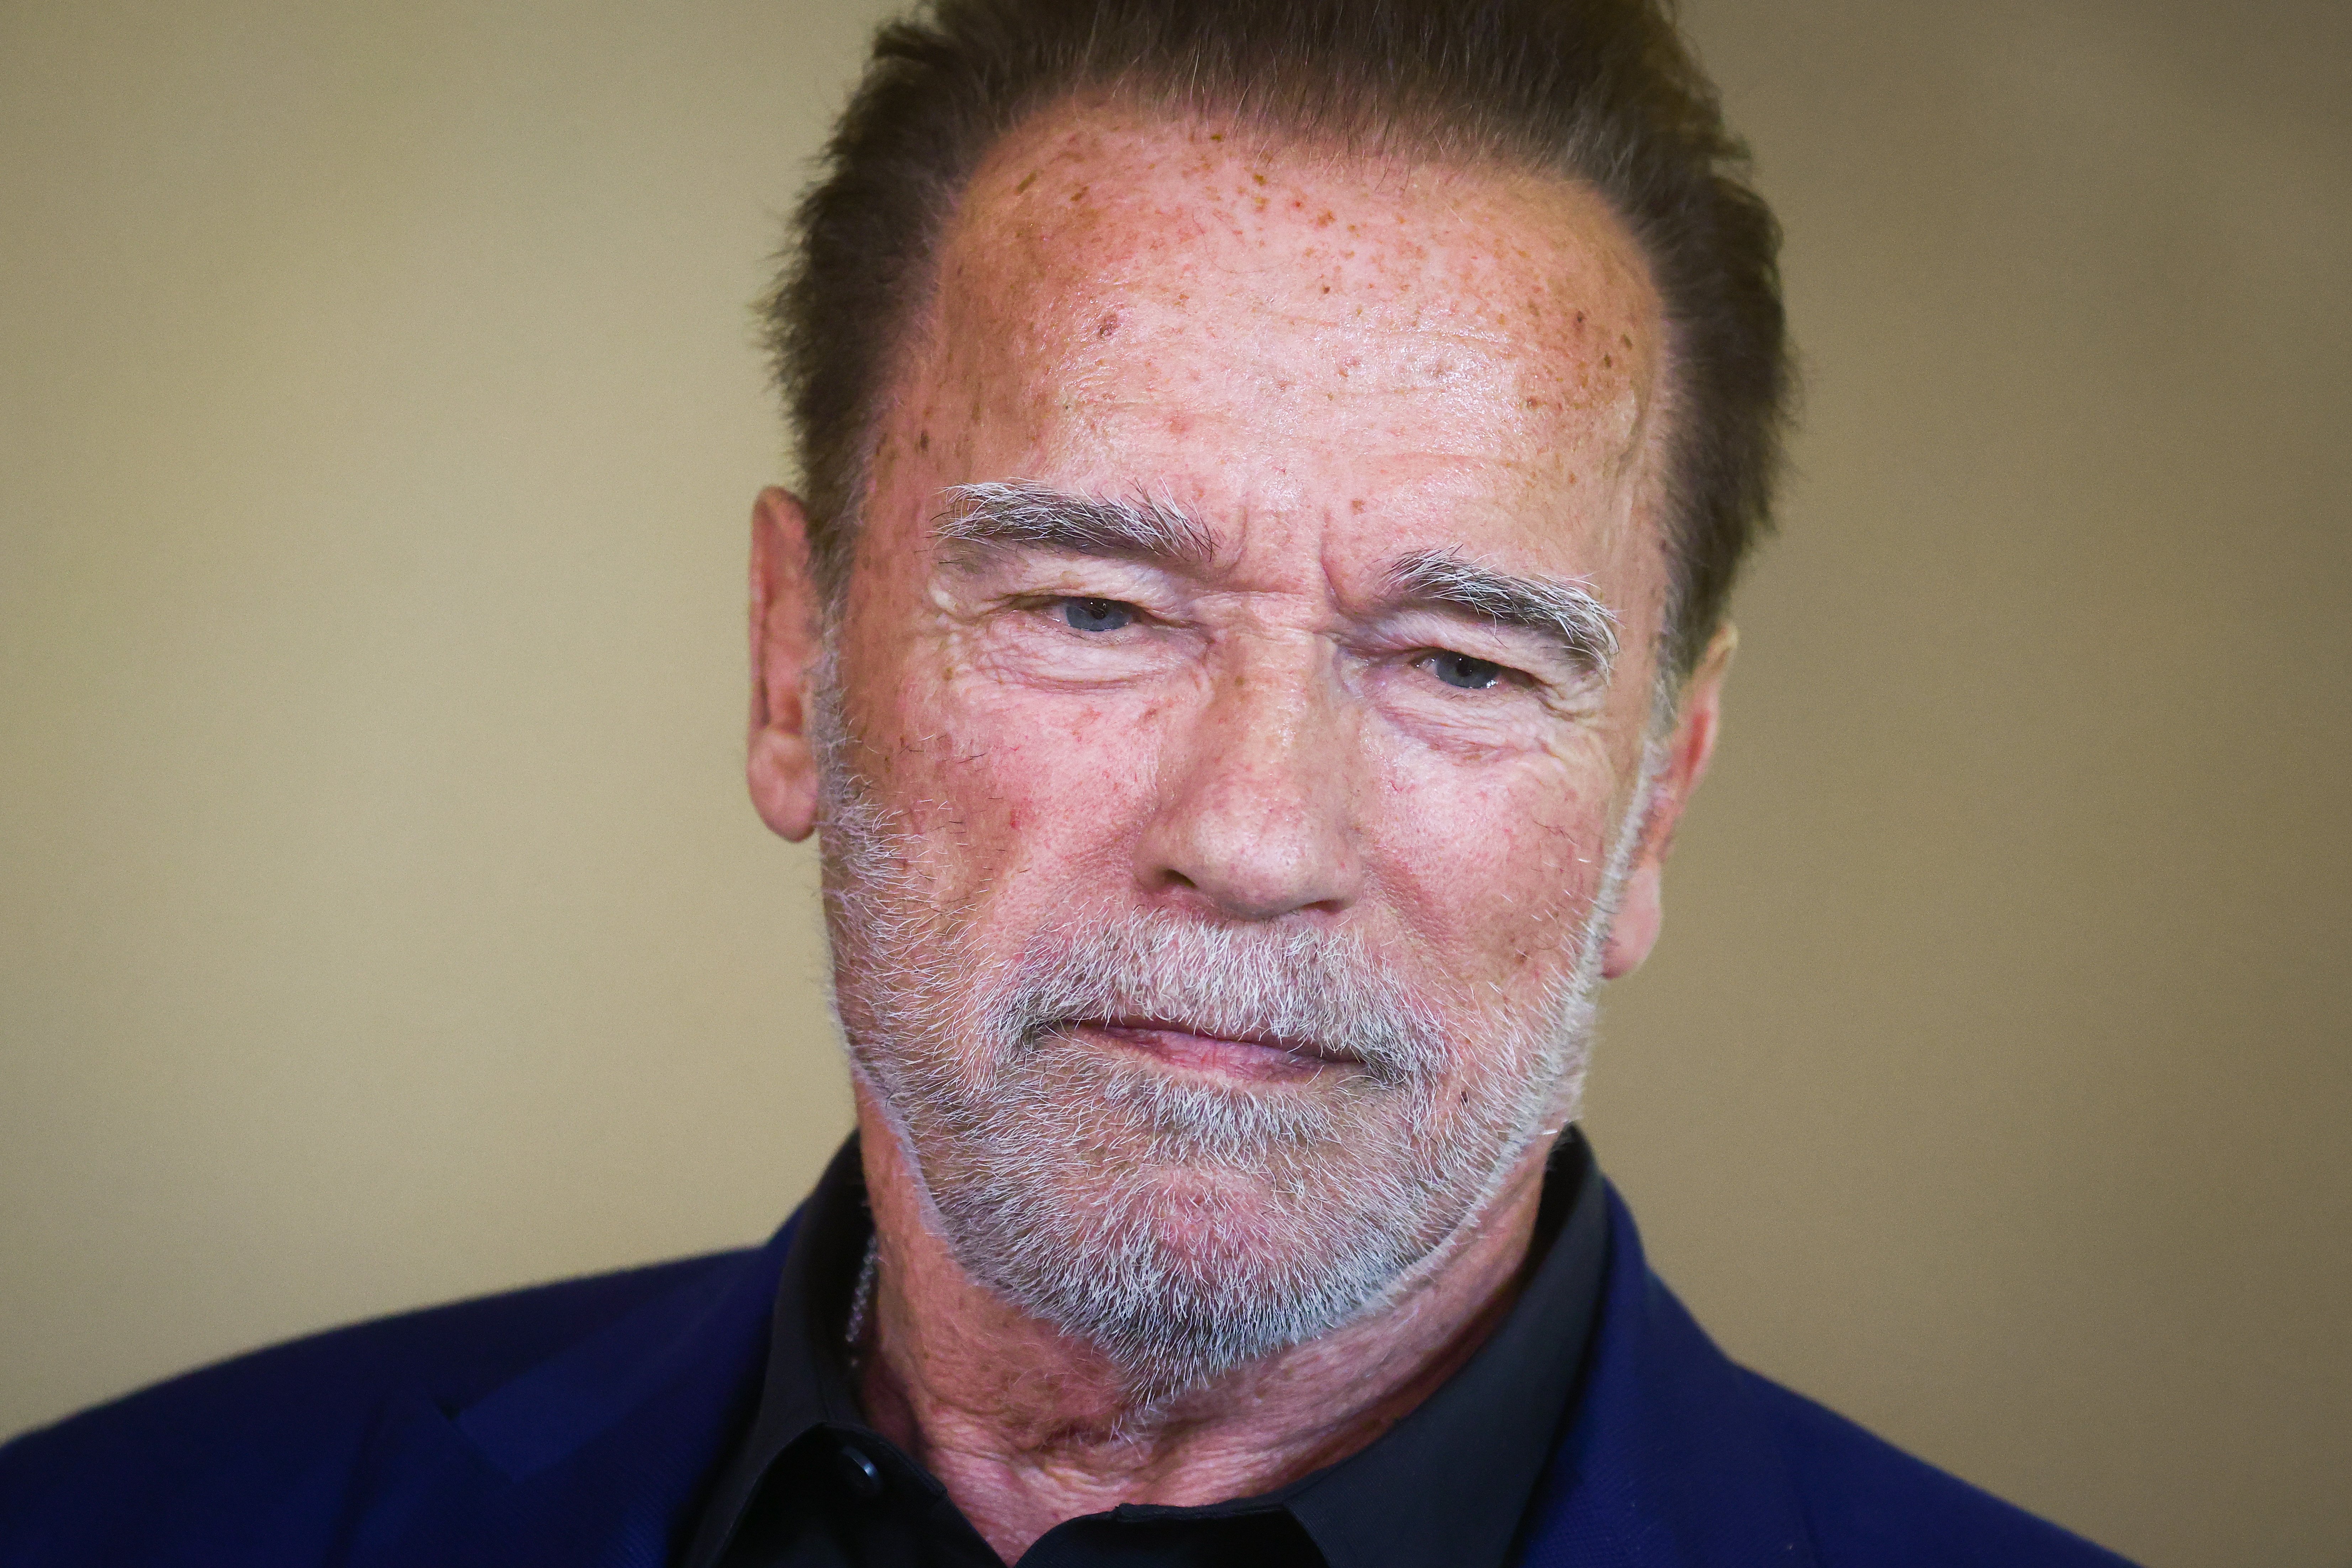 Arnold Schwarzenegger est photographié à la Fondation du centre juif d'Auschwitz après avoir visité l'ancien camp de concentration et d'extermination allemand nazi d'Auschwitz Birkenau. | Source : Getty Images